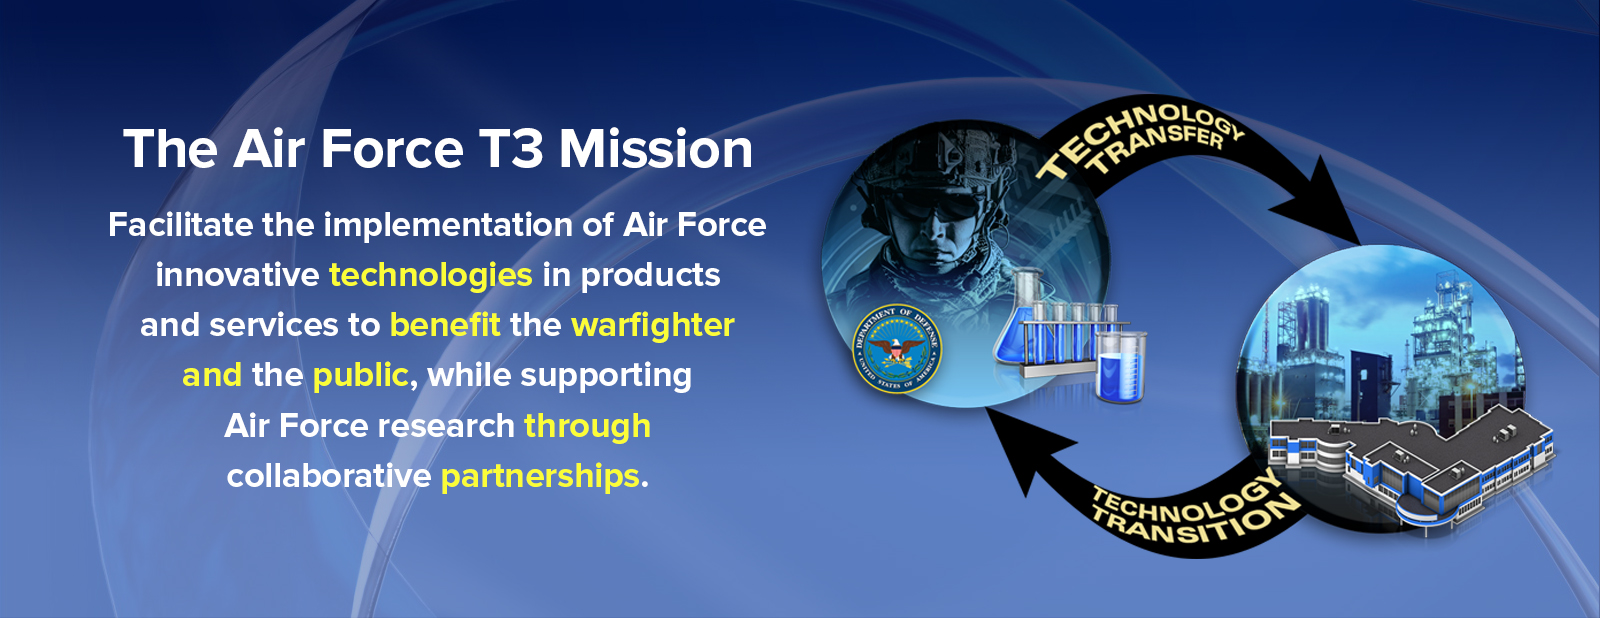 Air Force Mission Slides